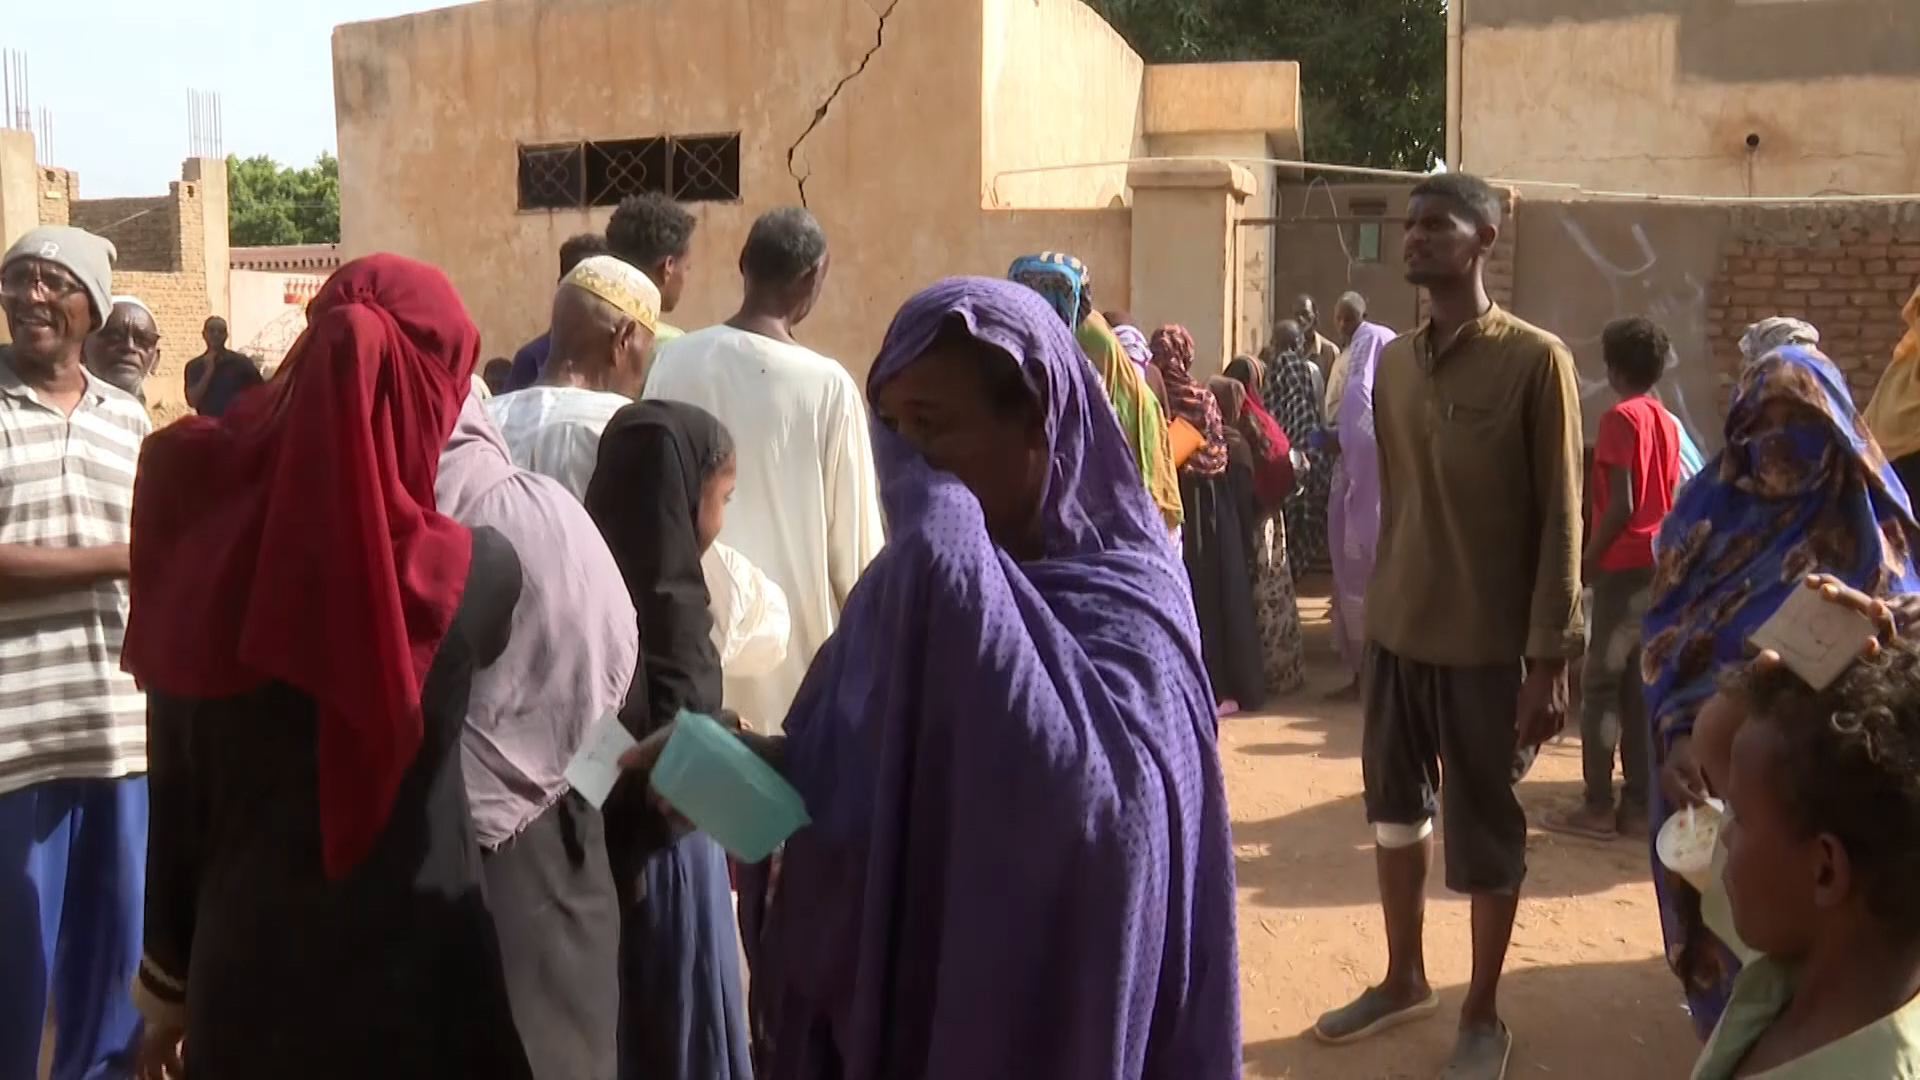 الأمم المتحدة تحذر من “جوع كارثي” في السودان خلال الأشهر المقبلة | أخبار – البوكس نيوز